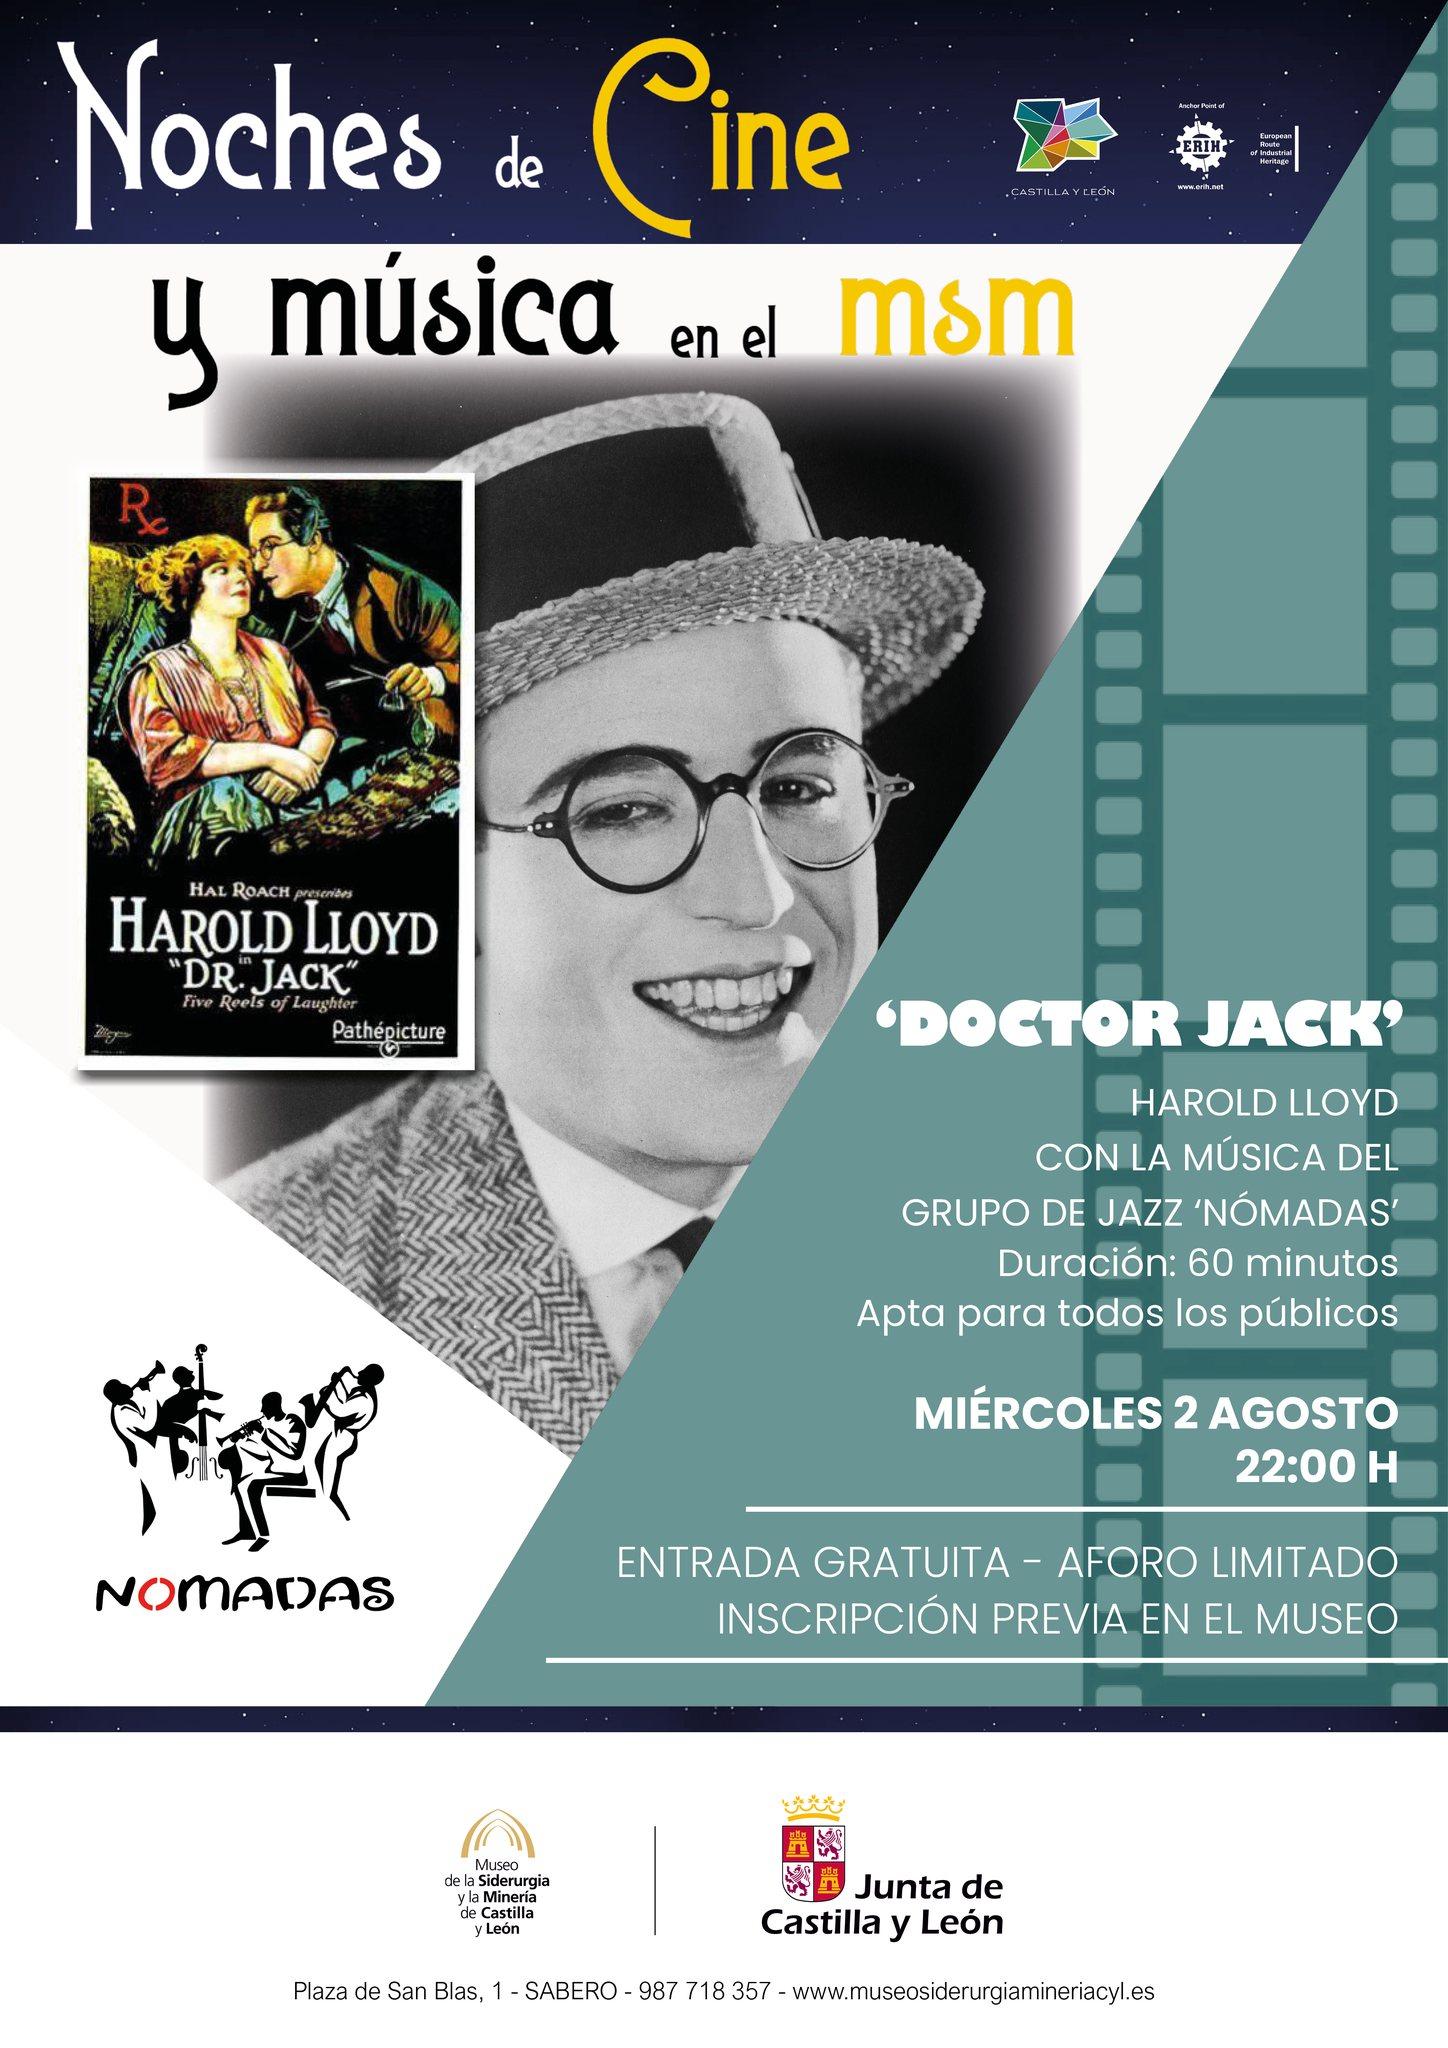 Noches de cine y música en el msm.0